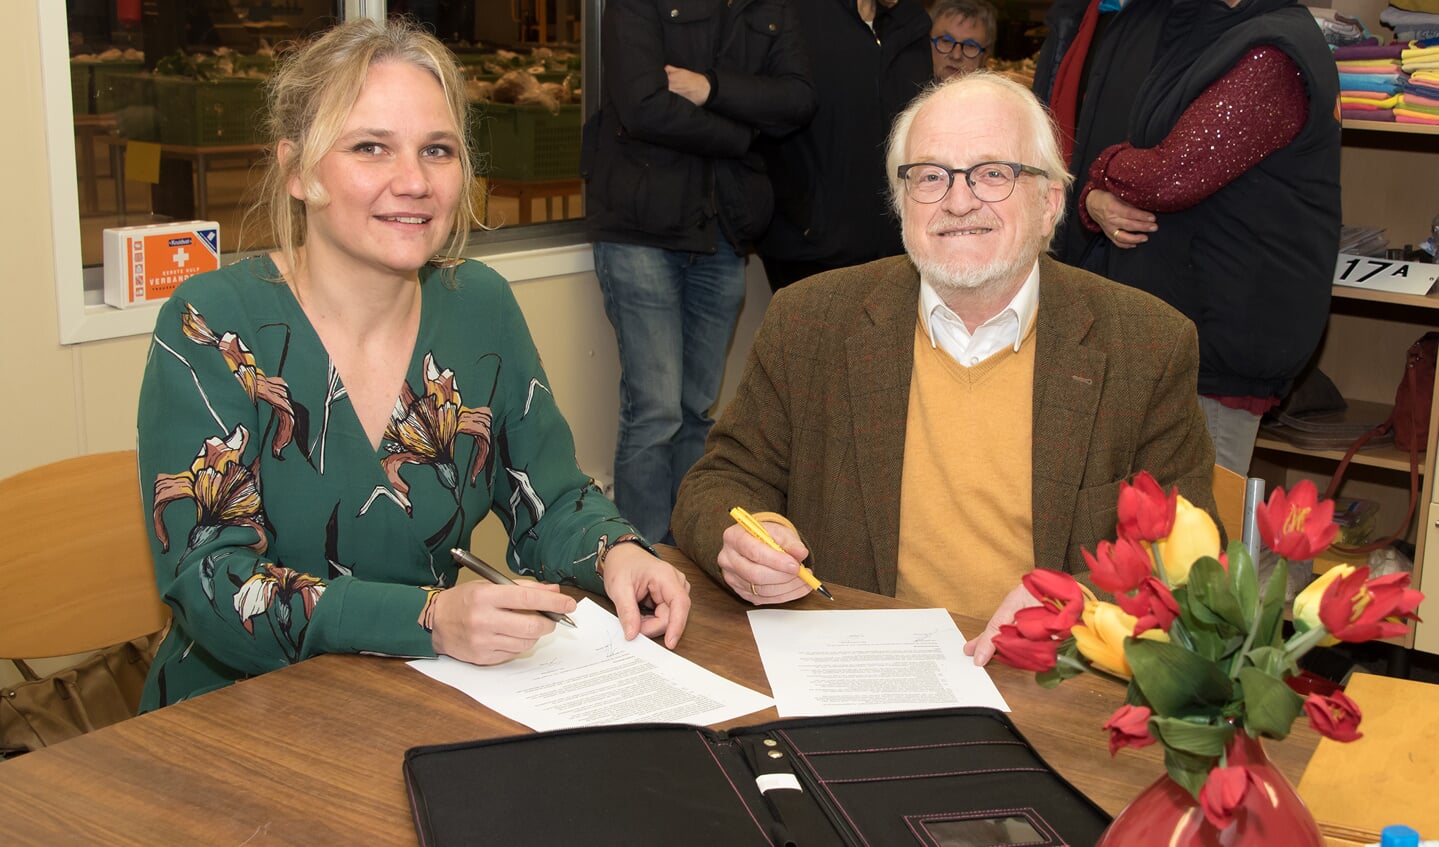 Op vrijdagochtend 9 maart hebben de heer Vrieze, voorzitter van de Voedselbank, en wethouder Annelies de Jonge daarom een samenwerkingsovereenkomst ondertekend. Foto: PR